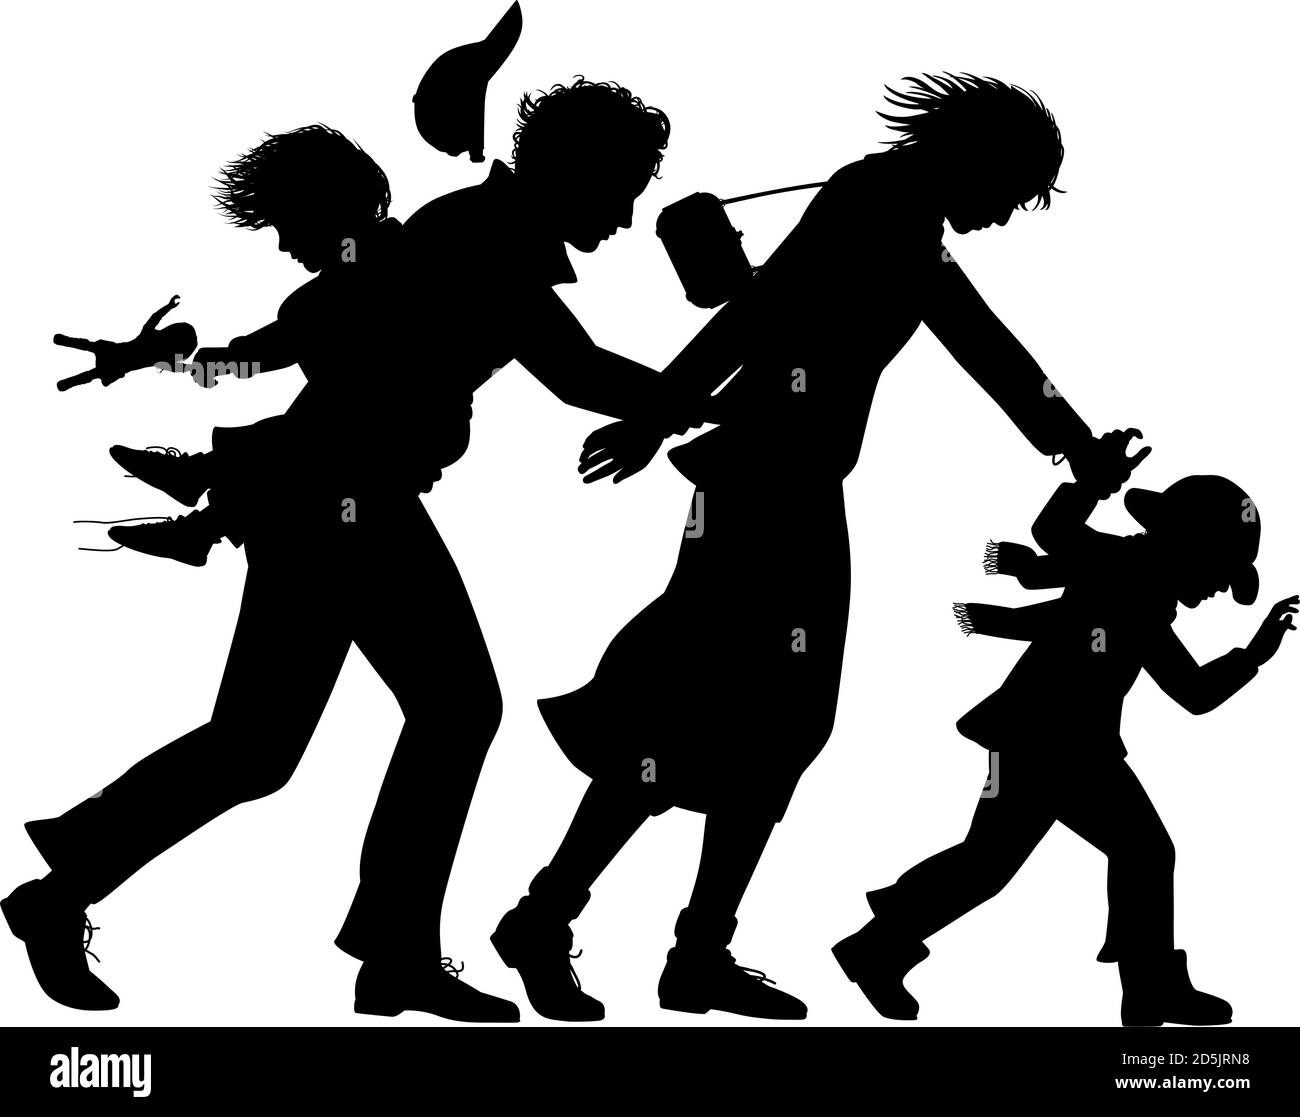 Silhouette vectorielle modifiable d'une famille aux prises avec un fort vents avec toutes les figures comme objets séparés Illustration de Vecteur